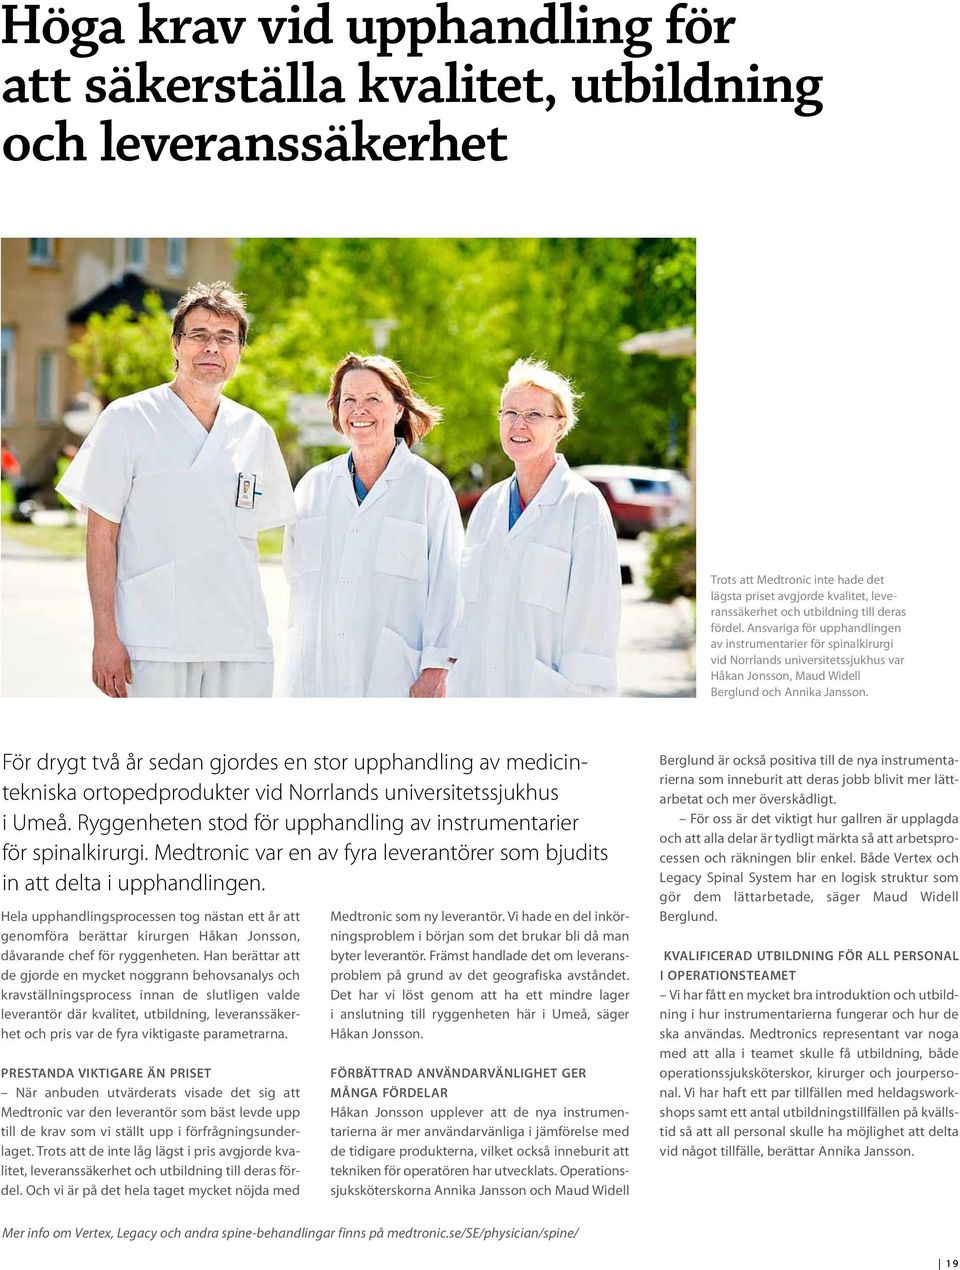 För drygt två år sedan gjordes en stor upphandling av medicintekniska ortopedprodukter vid Norrlands universitetssjukhus i Umeå. Ryggenheten stod för upphandling av instrumentarier för spinalkirurgi.